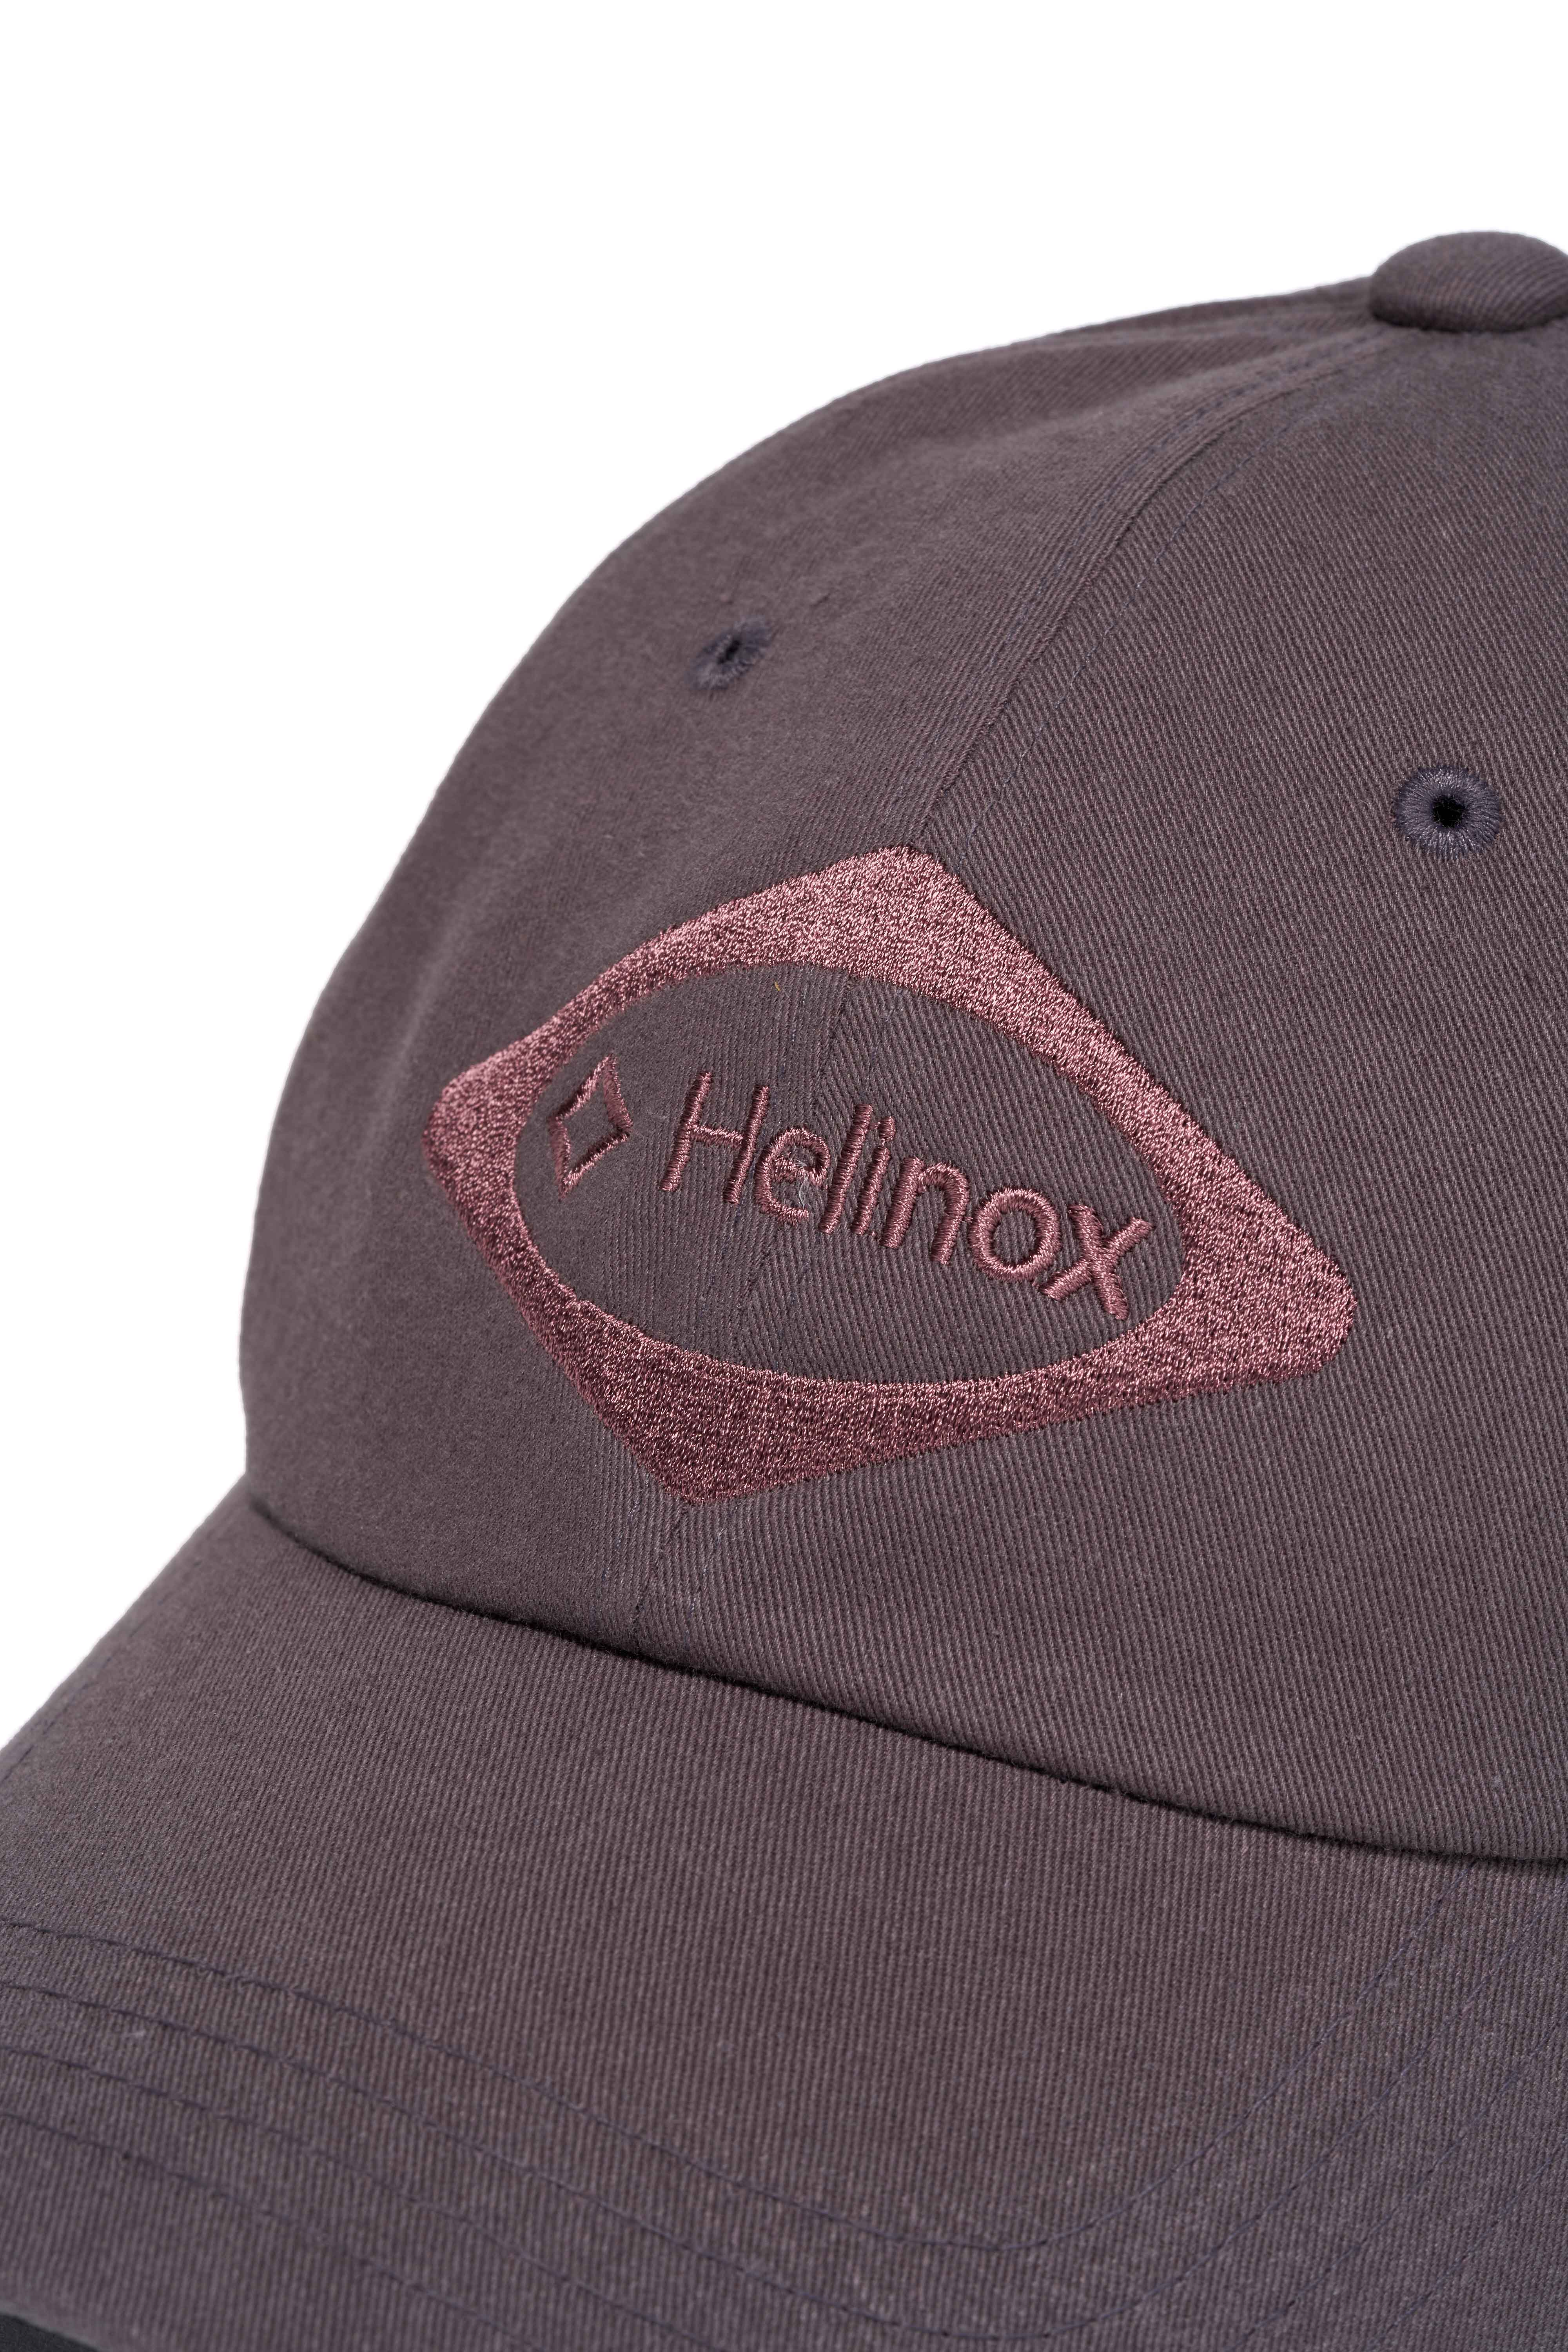 MSCHF X HELINOX BALL CAP_PURPLE GREY